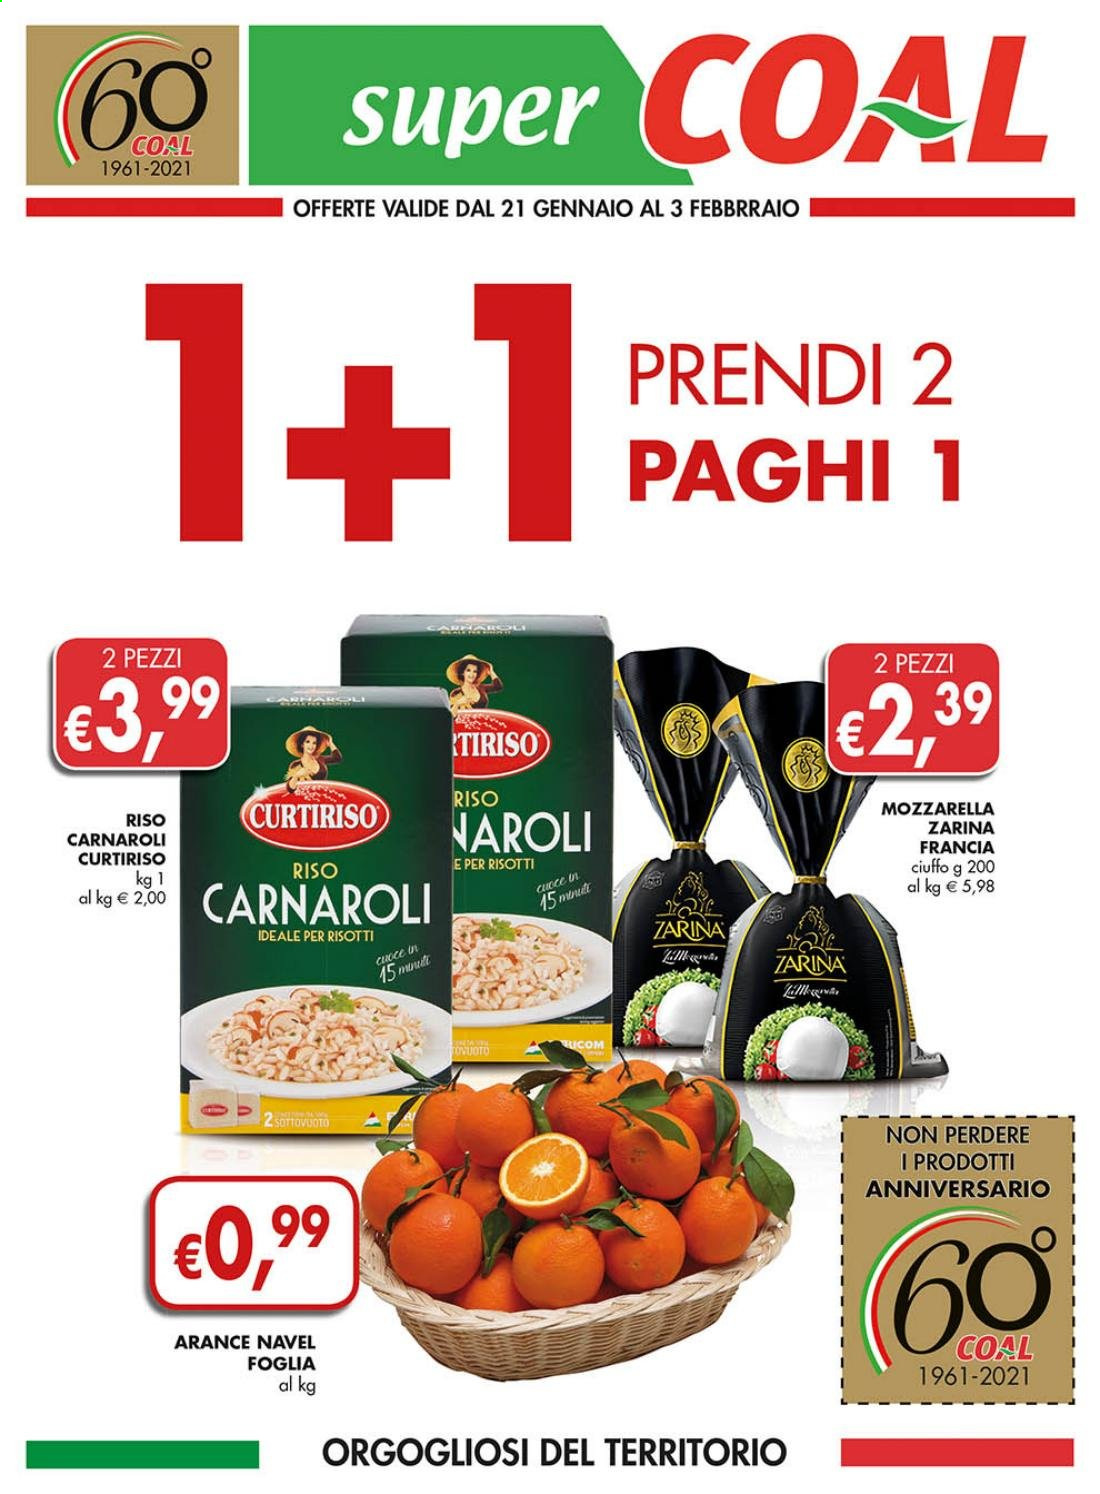 thumbnail - Volantino COAL - 21/1/2021 - 3/2/2021 - Prodotti in offerta - arance, arancie Navel, formaggio, mozzarella, riso, riso carnaroli, Curtiriso. Pagina 1.